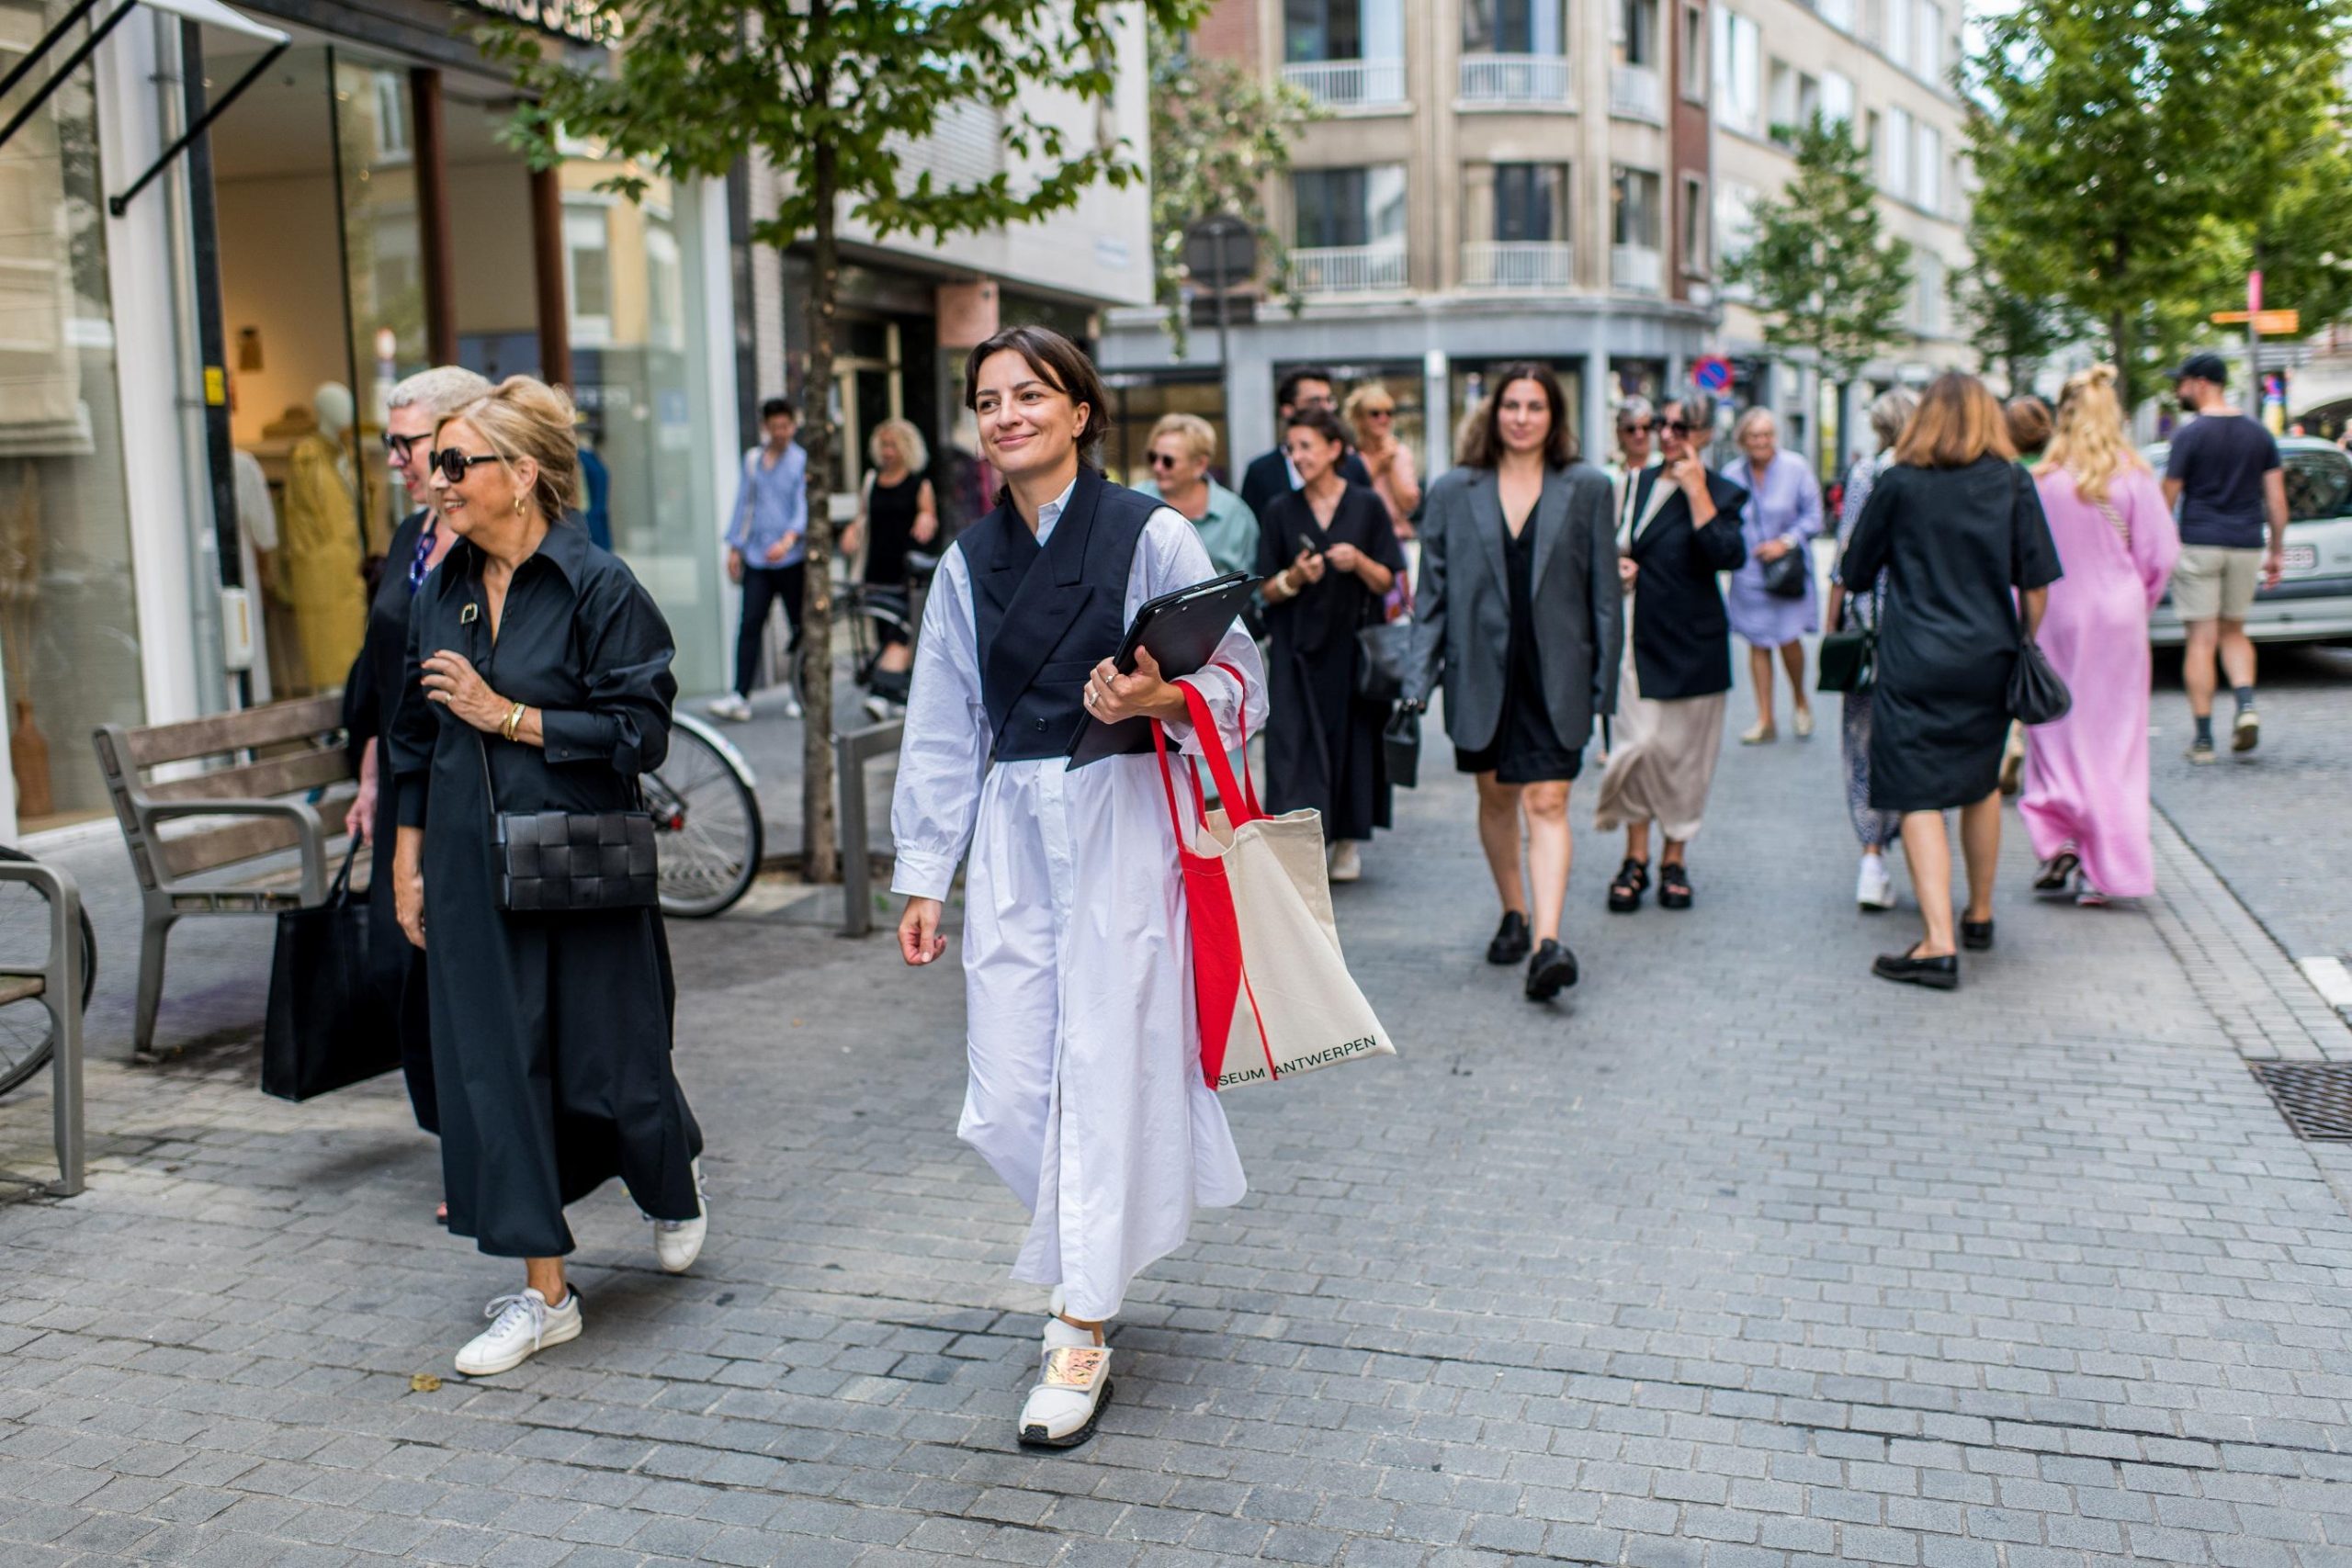 Fashion & Sustainability walk – Sekundarbildung & Hochschulen